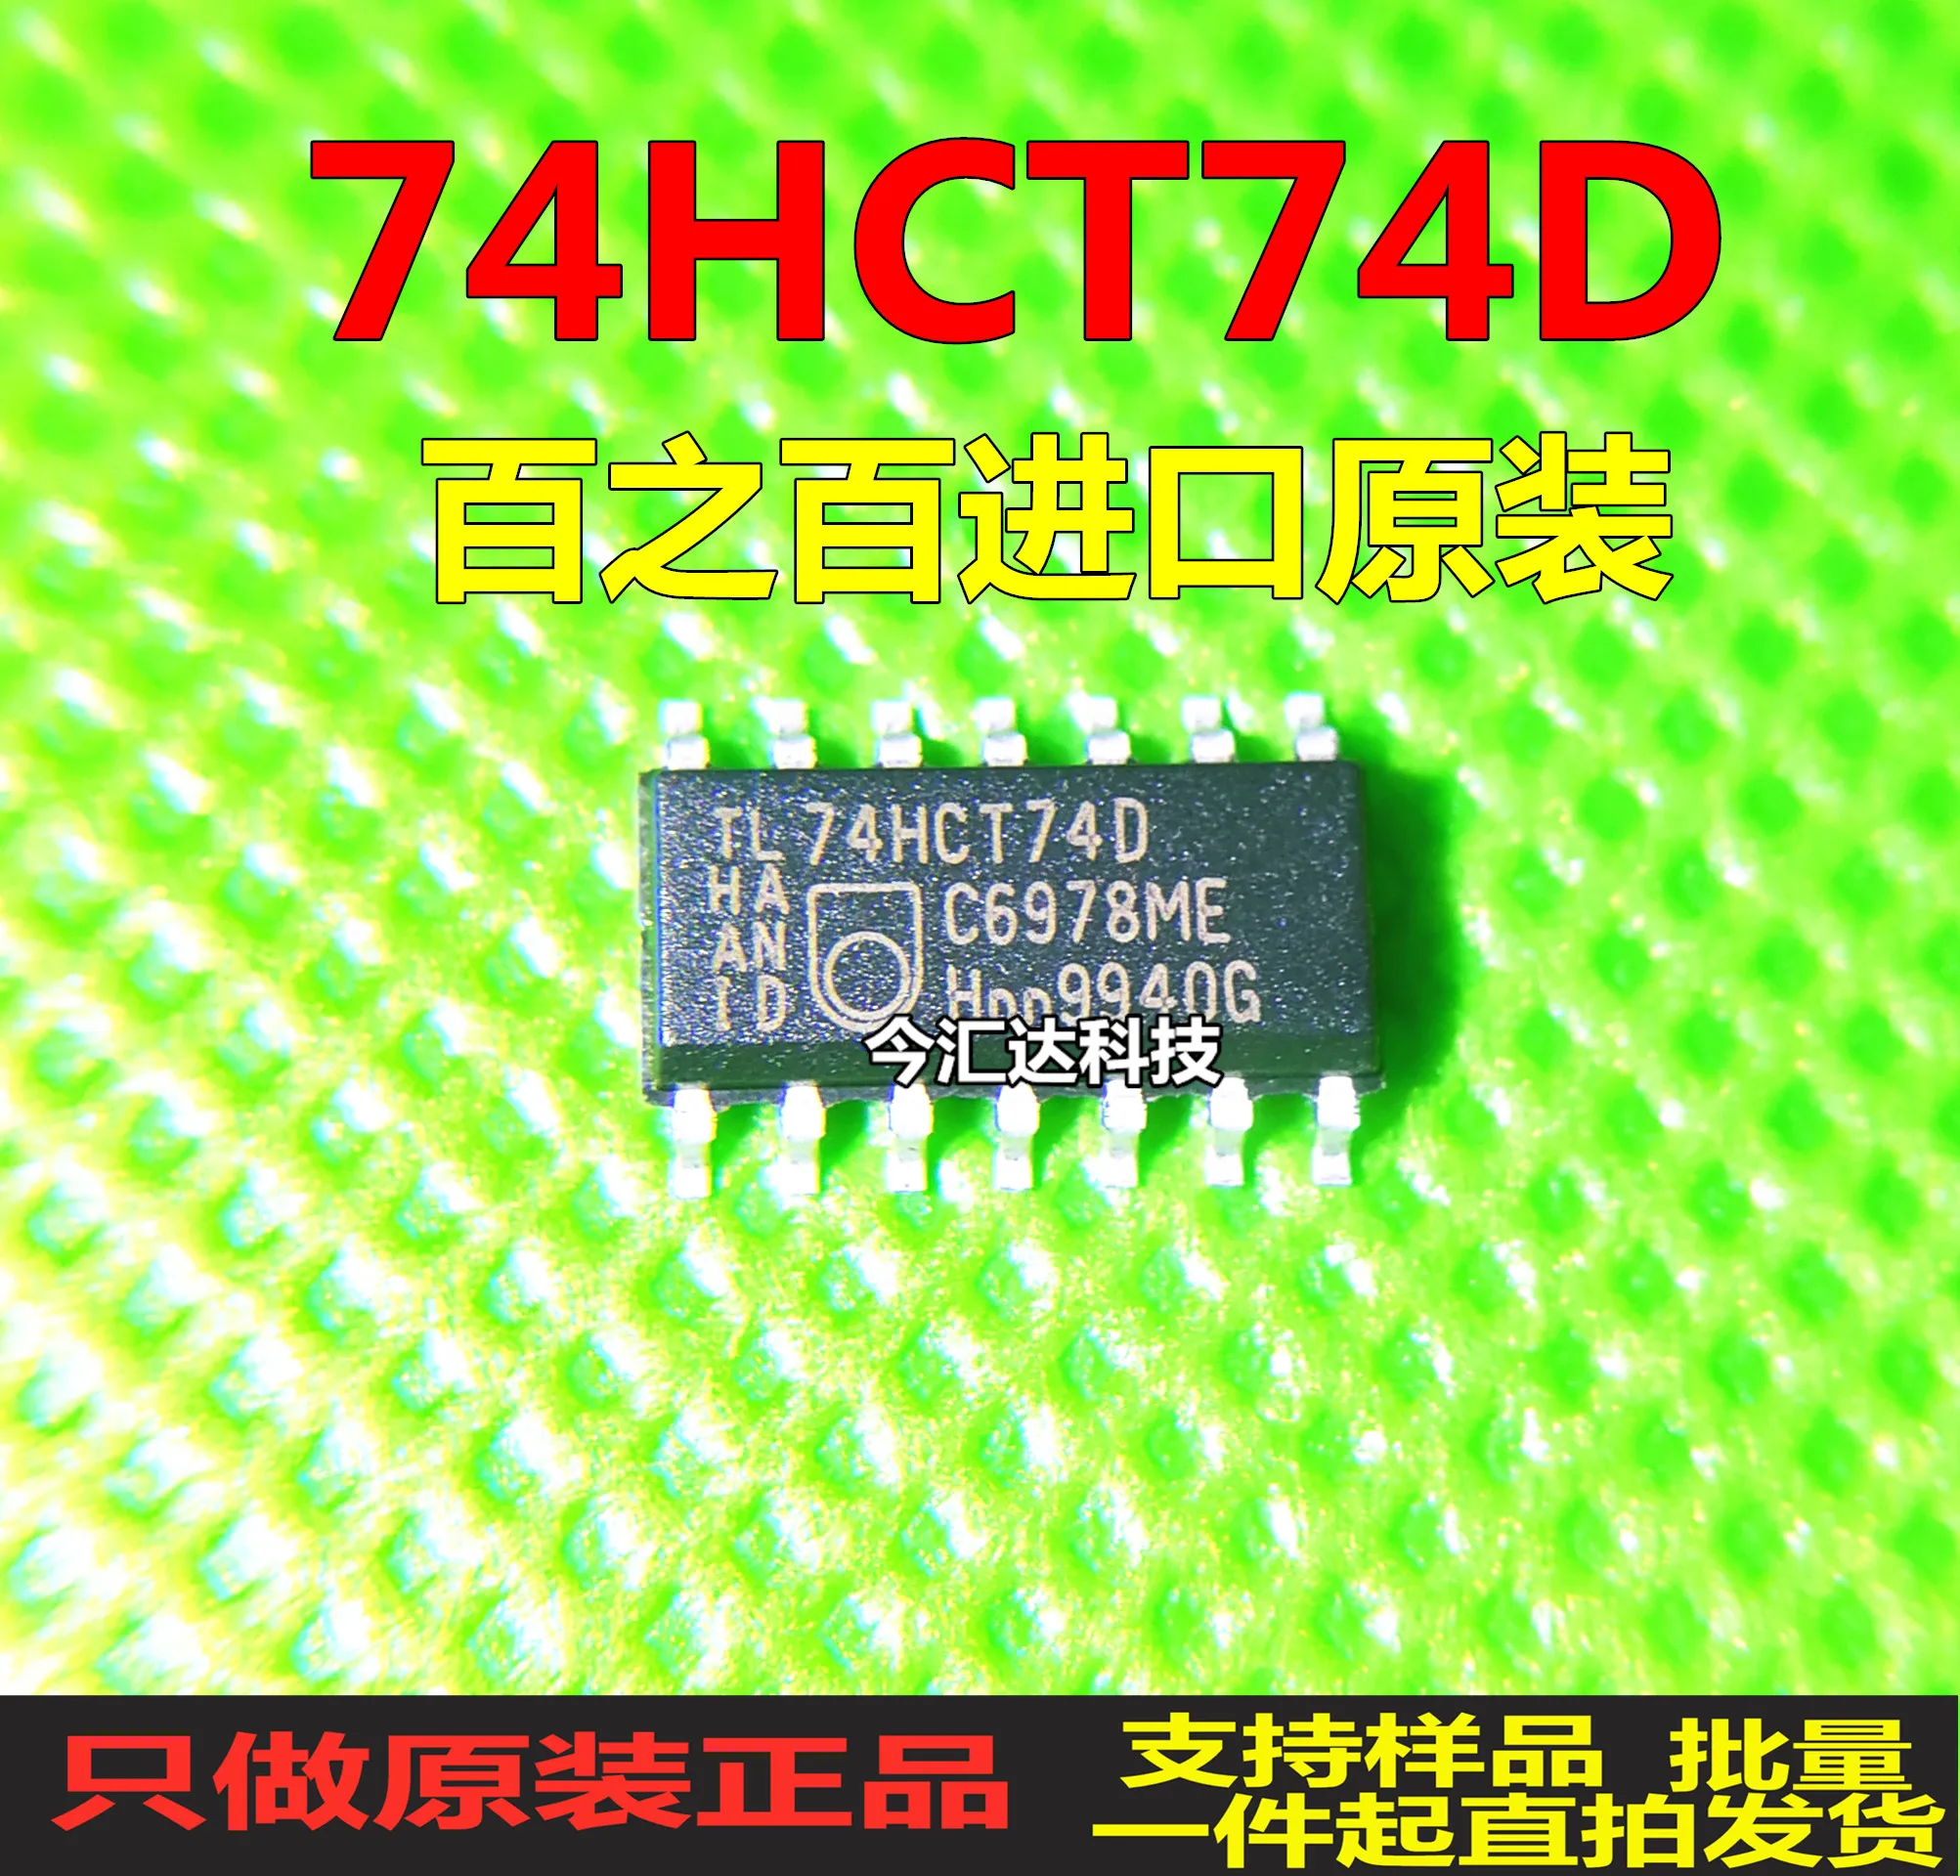 

30pcs original new 30pcs original new 74HCT74D SOP14 logic chip 74HCT74D